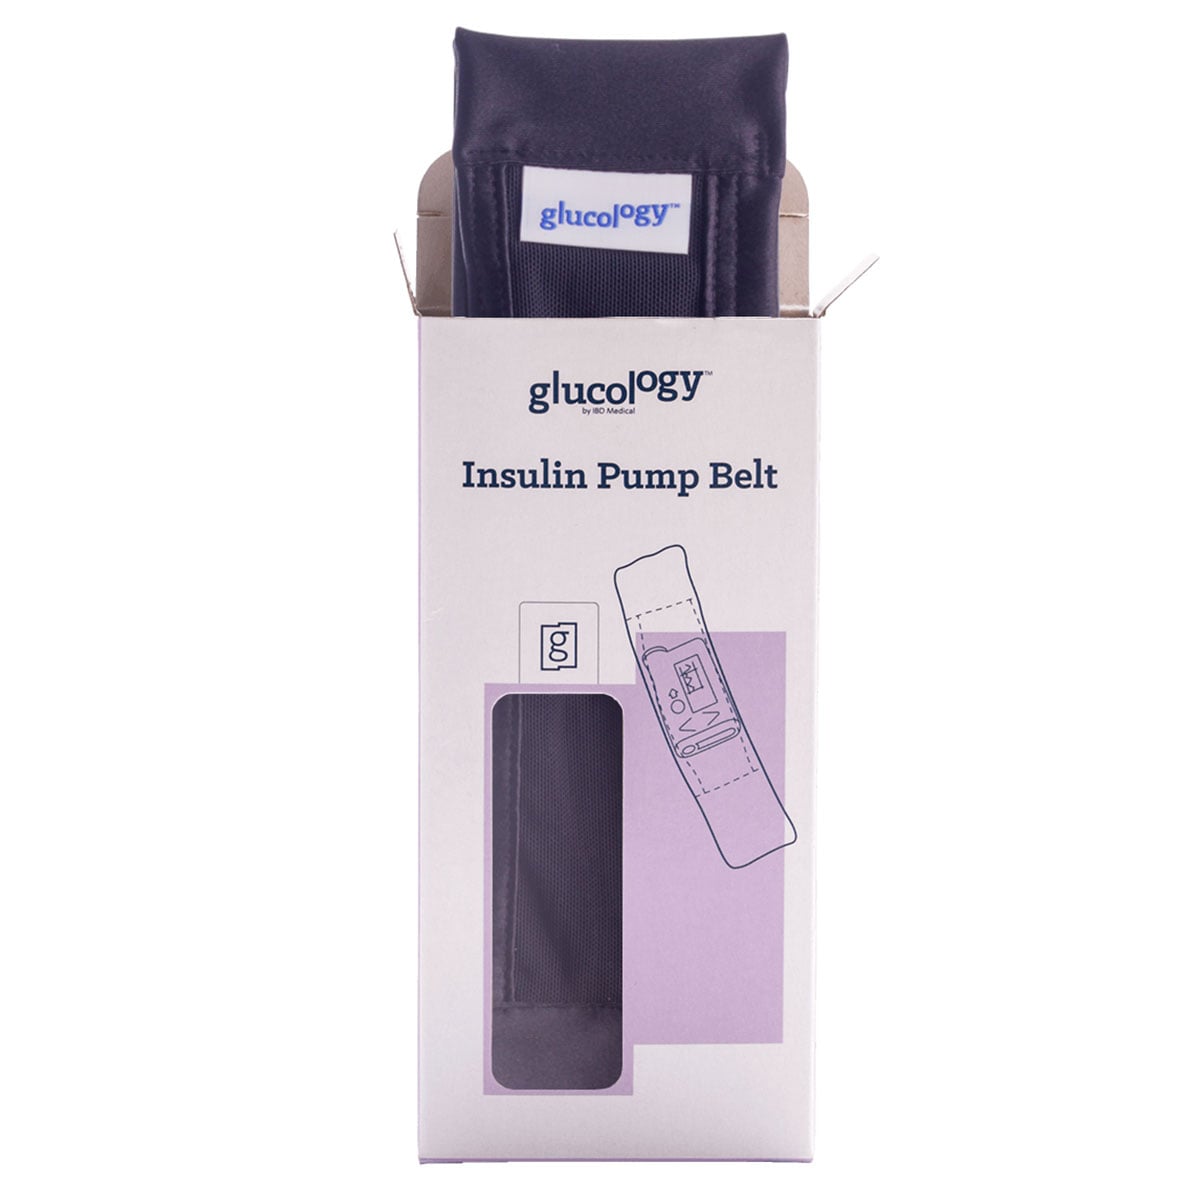 Glucology Insulin Pump Belt Large Black